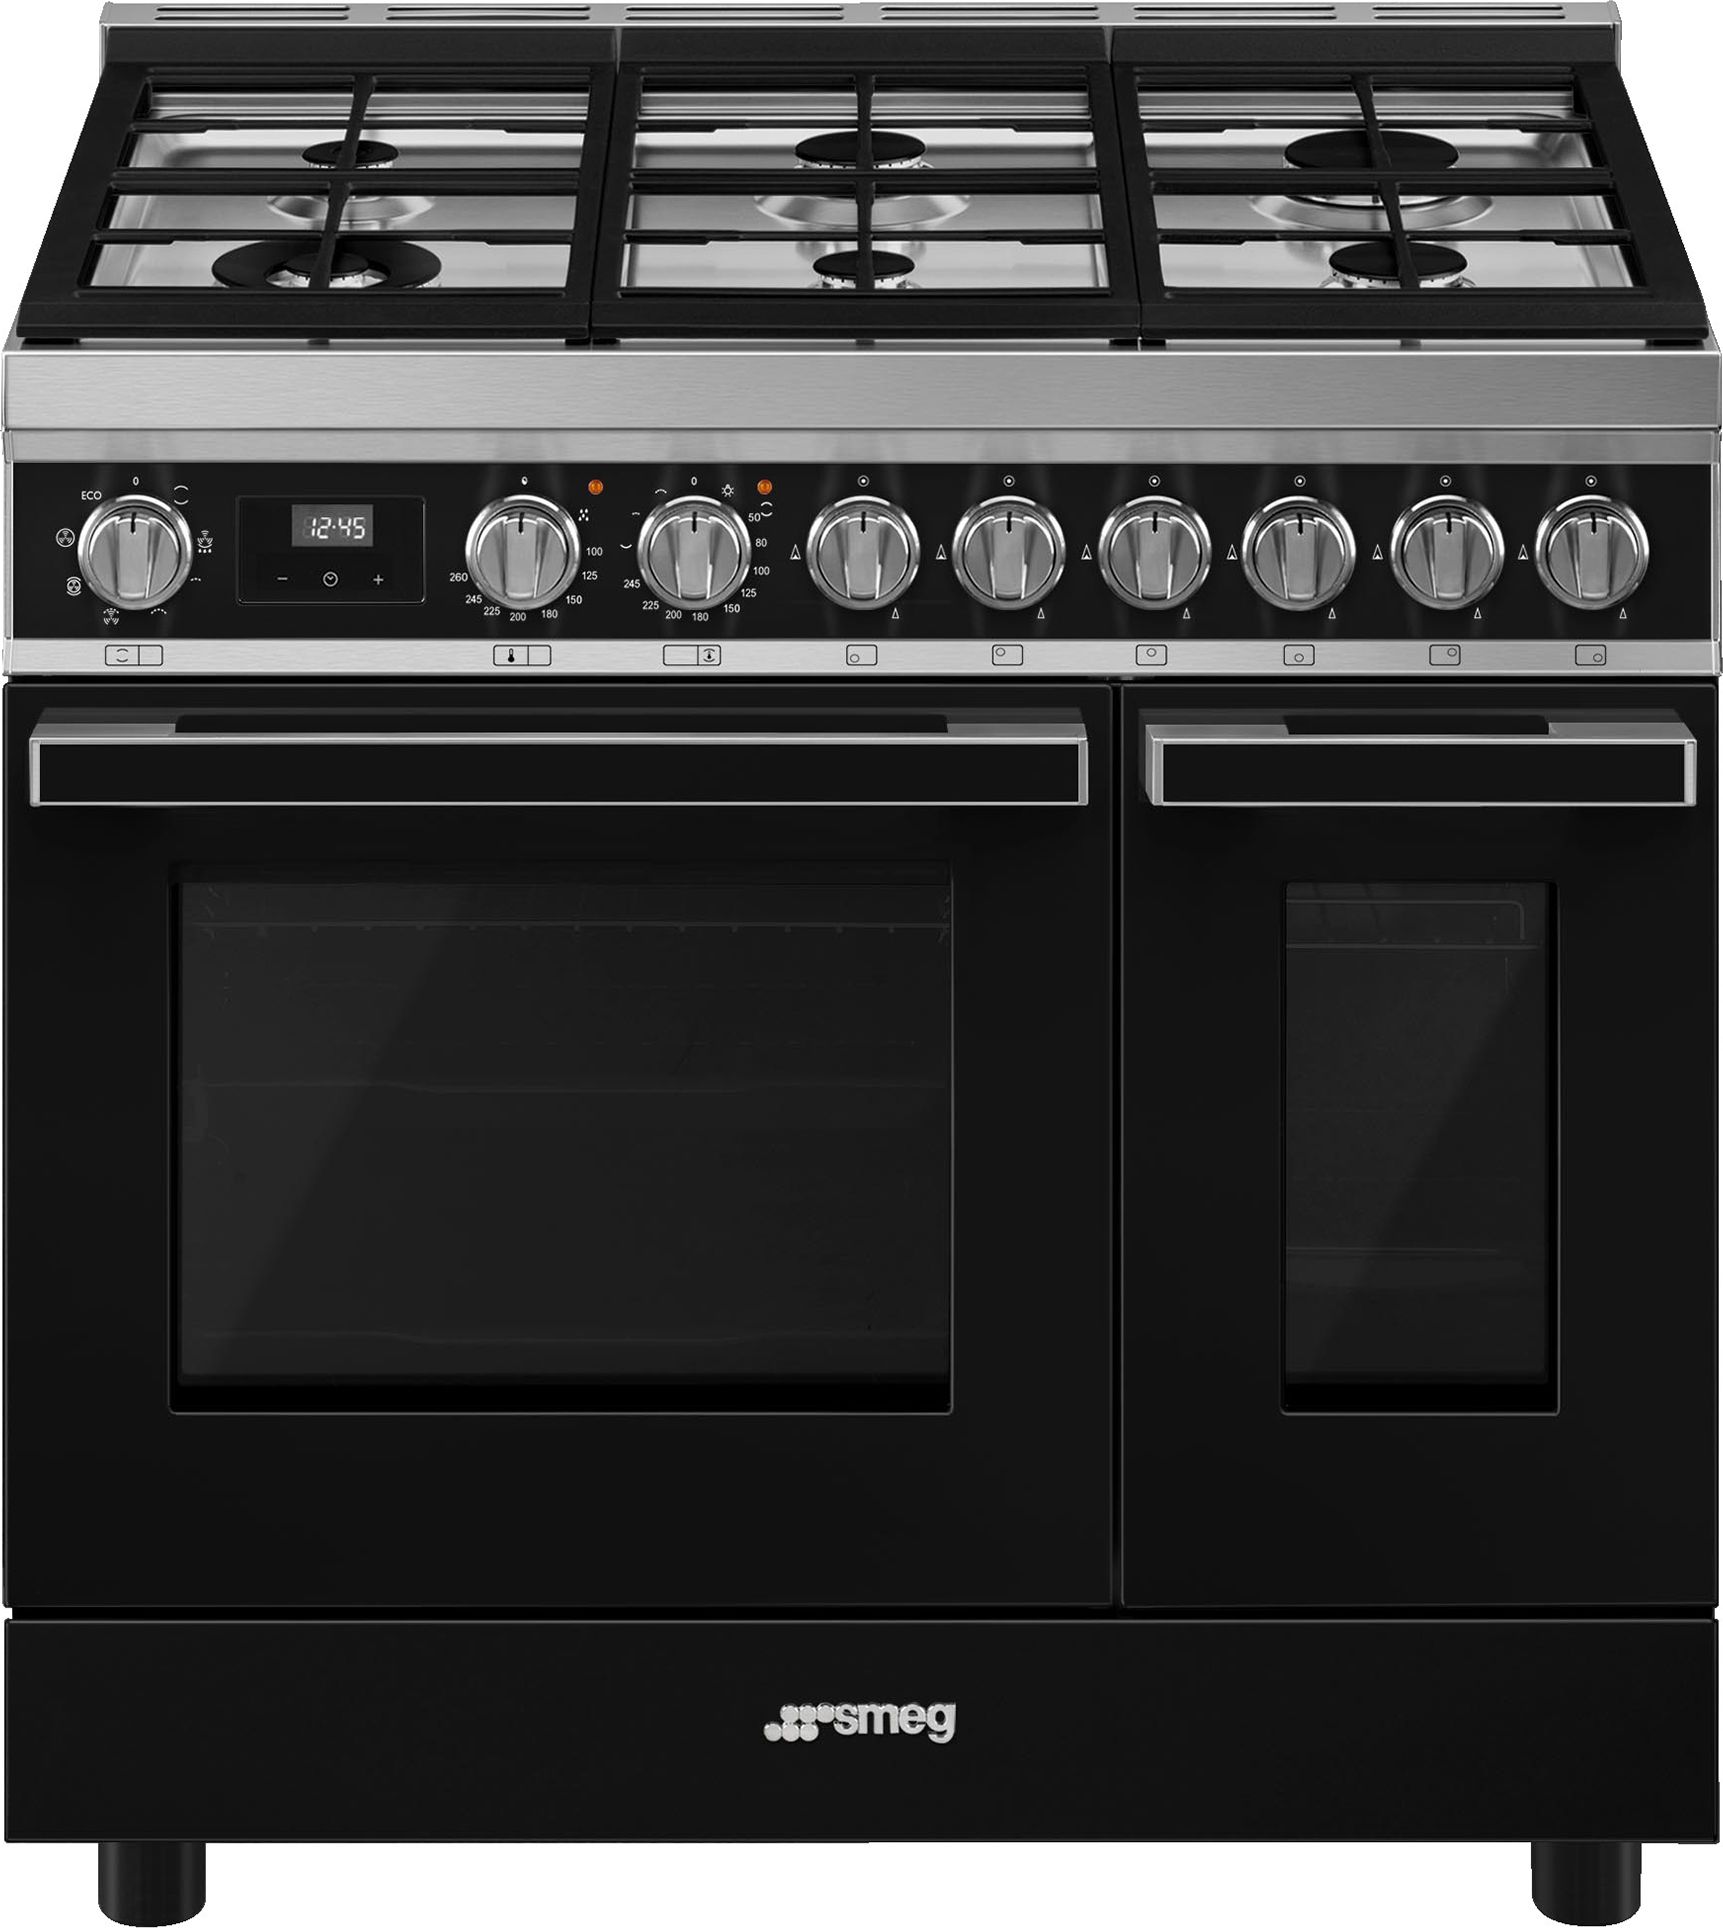 Smeg Portofino CPF92GMBL Dual Fuel Range Cooker - Black - A/A Rated, Black